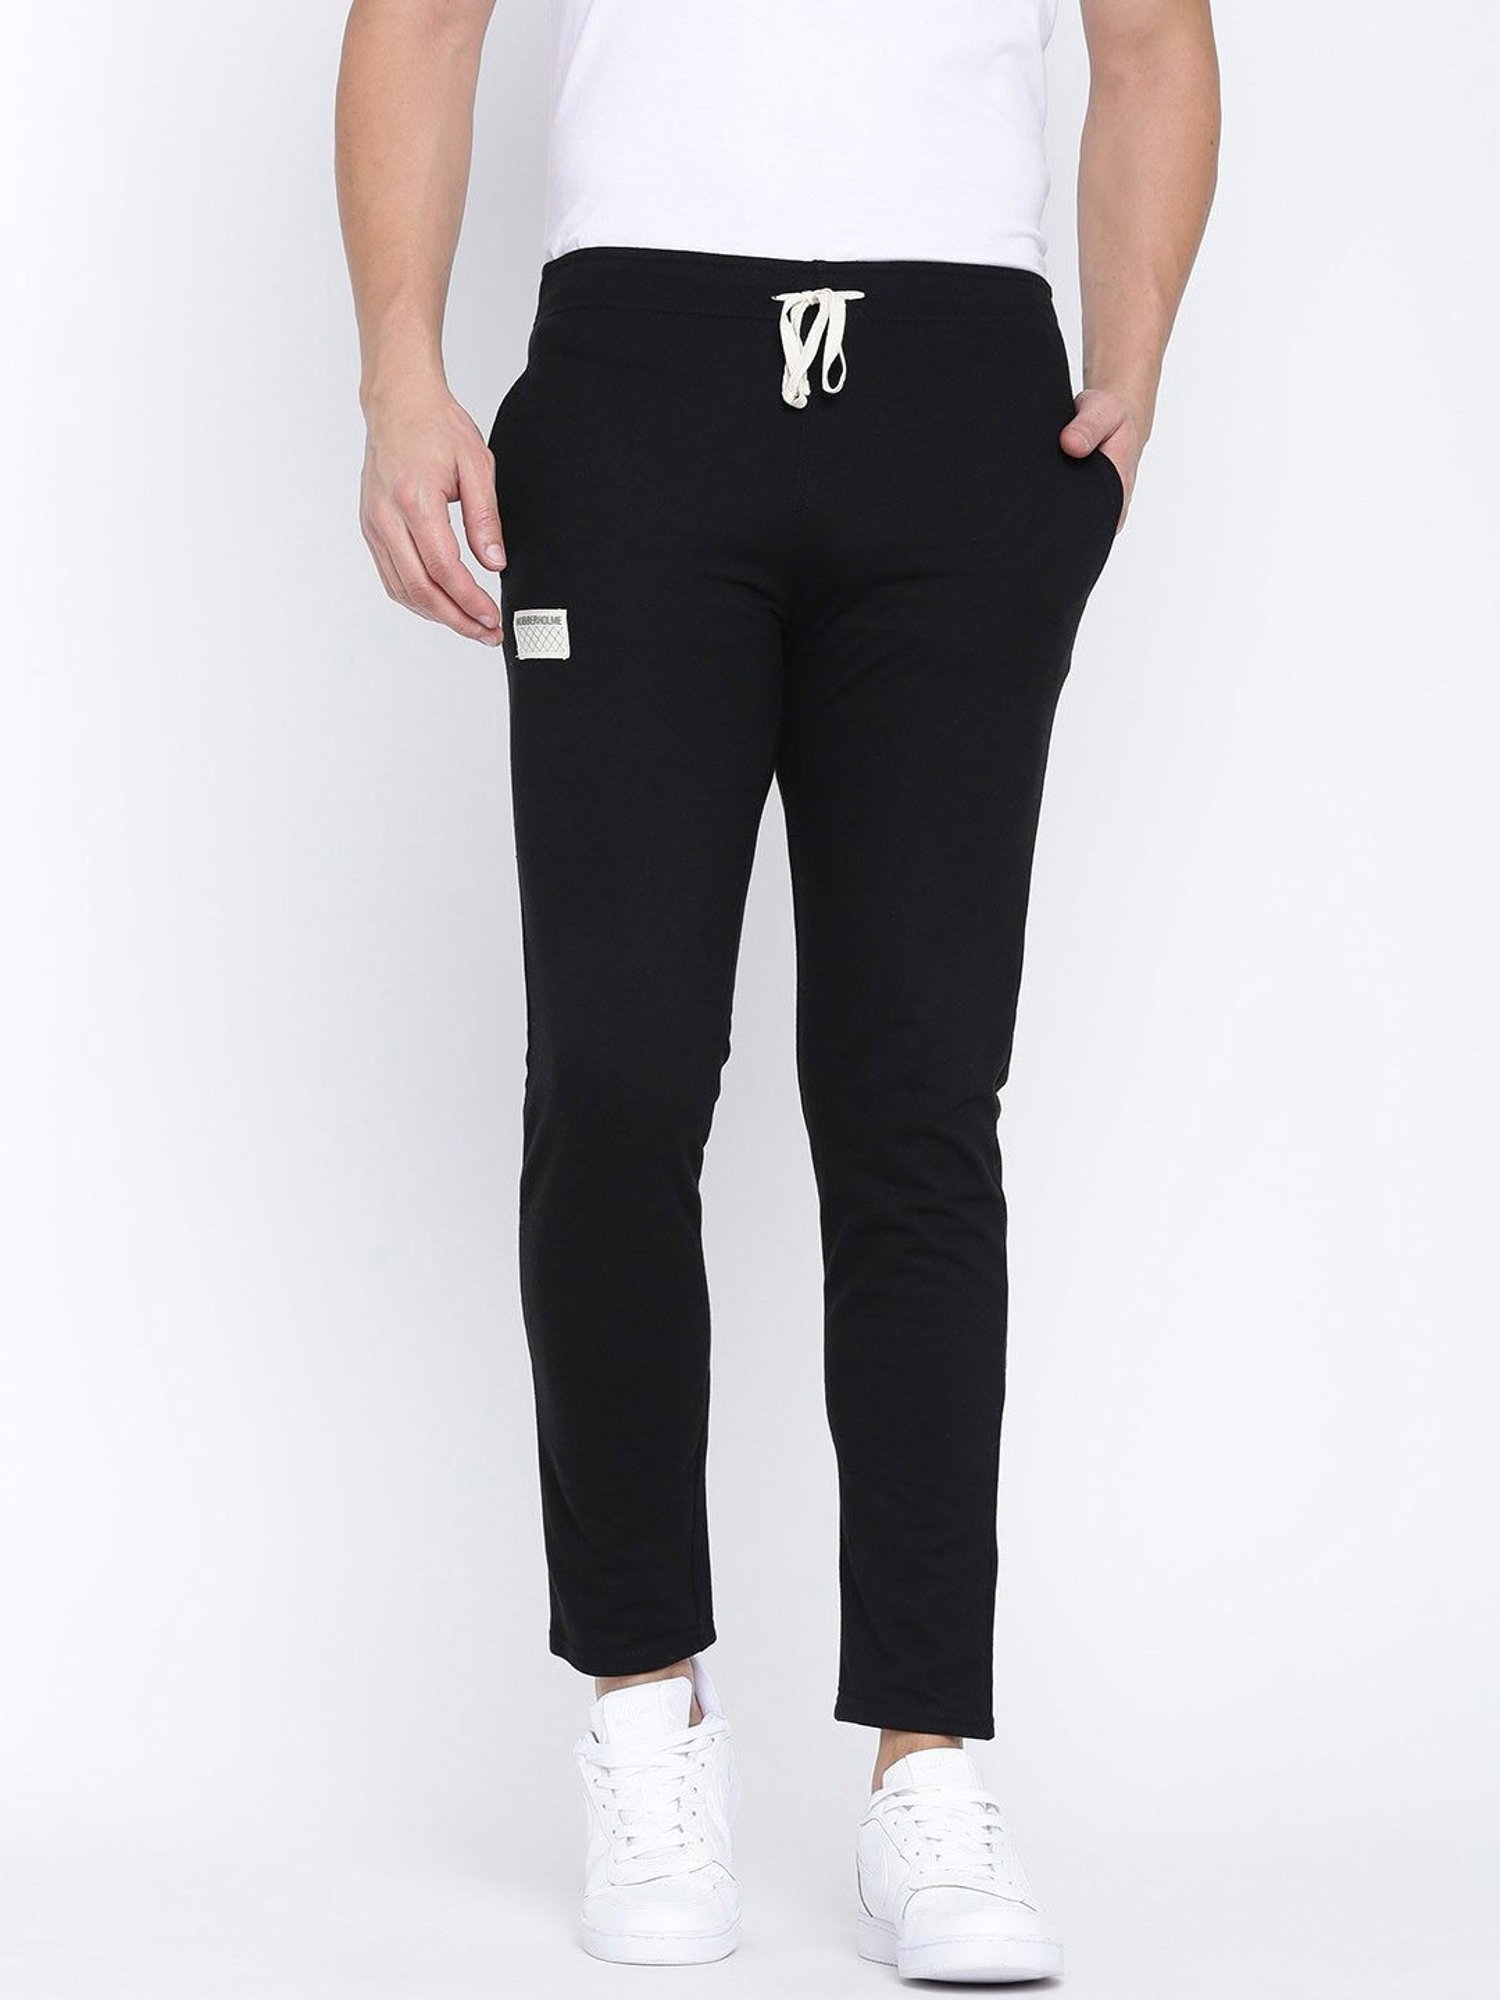 Buy Green Track Pants for Women by Hubberholme Online  Ajiocom